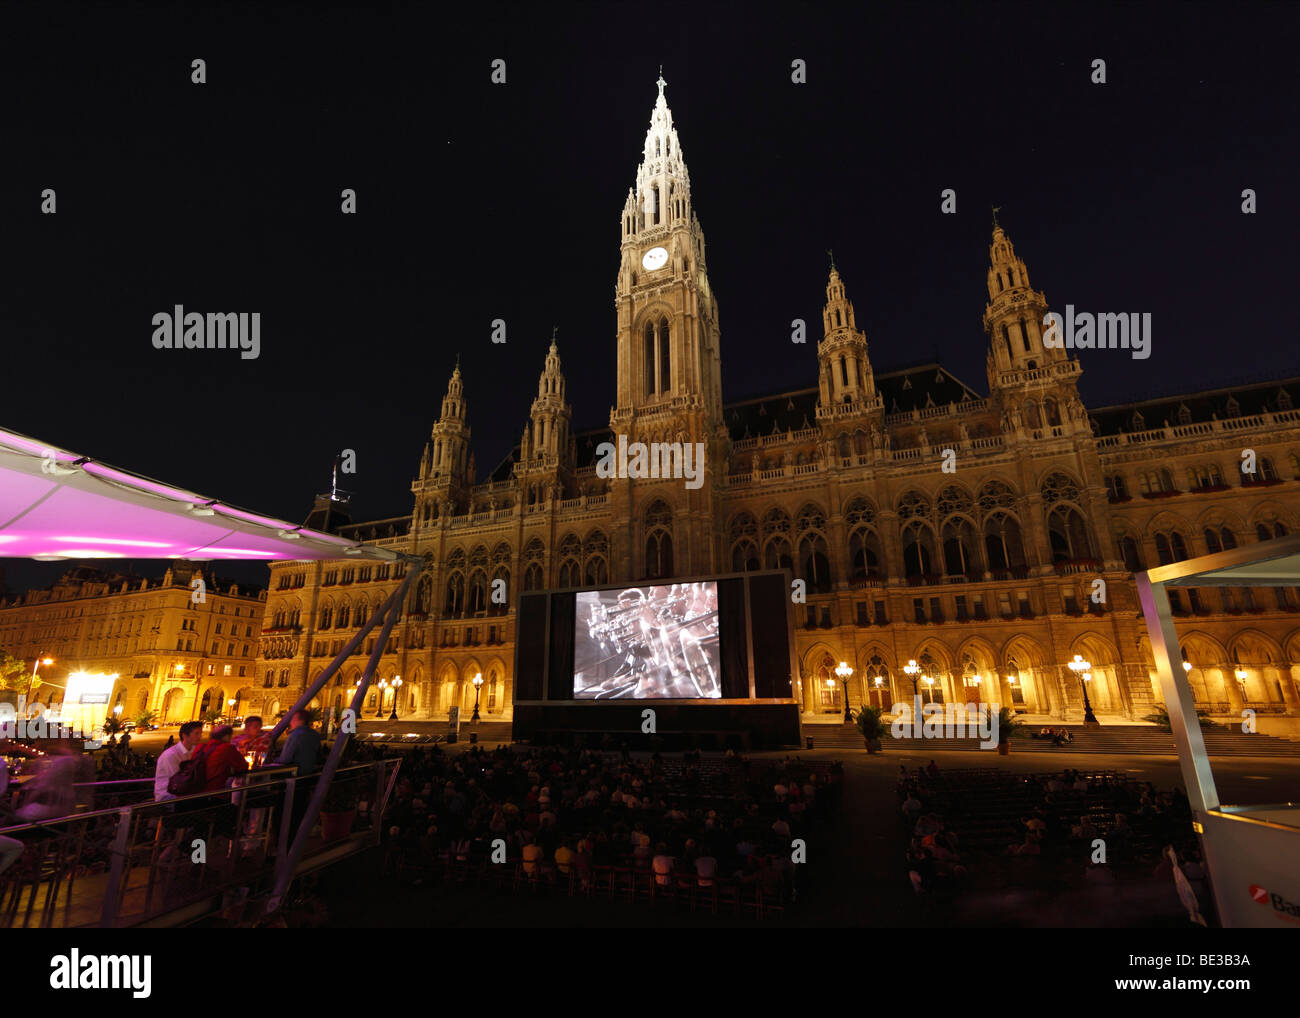 Festival du Film sur la Rathausplatz place de l'hôtel de ville, hôtel de ville, Vienne, Autriche, Europe Banque D'Images